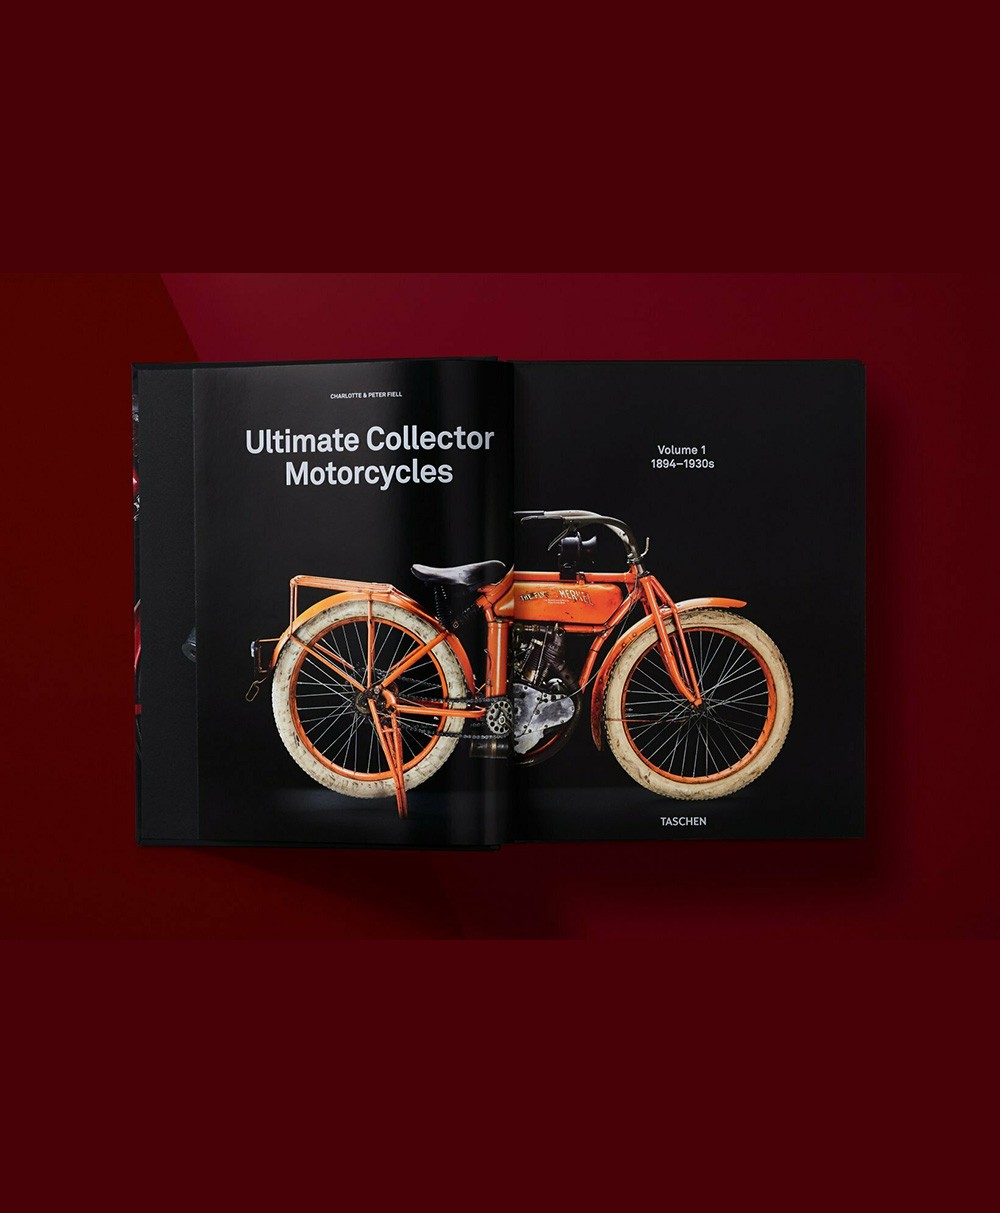 Produktbild des Bildbandes Ultimate Collector Motorcycles von Taschen Verlag - RAUM concept store